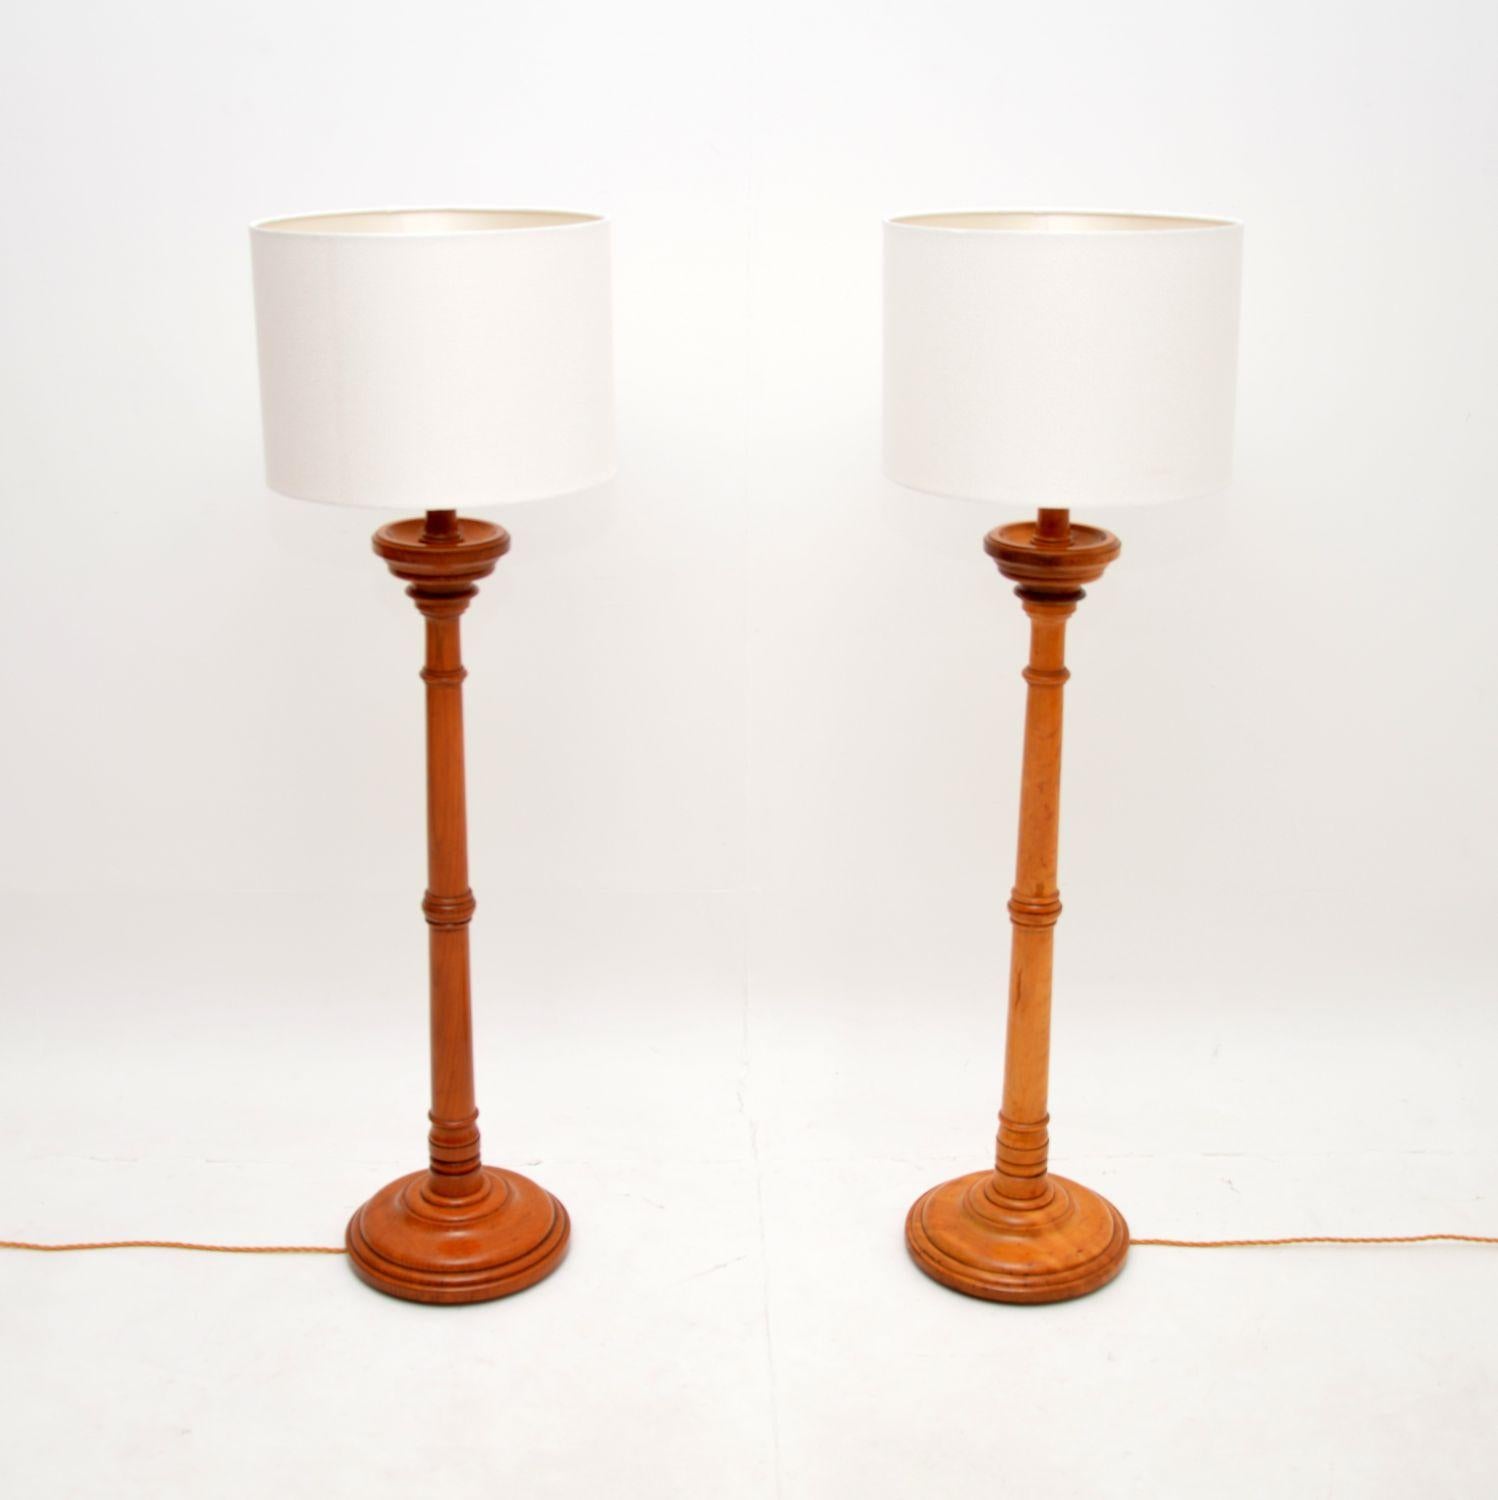 Une fantastique paire de lampadaires victoriens anciens. Fabriqués en Angleterre, ils datent d'environ 1880-1900.

Il s'agissait probablement à l'origine de grands bâtons de bougie qui ont été transformés en lampes électriques. L'un est en orme